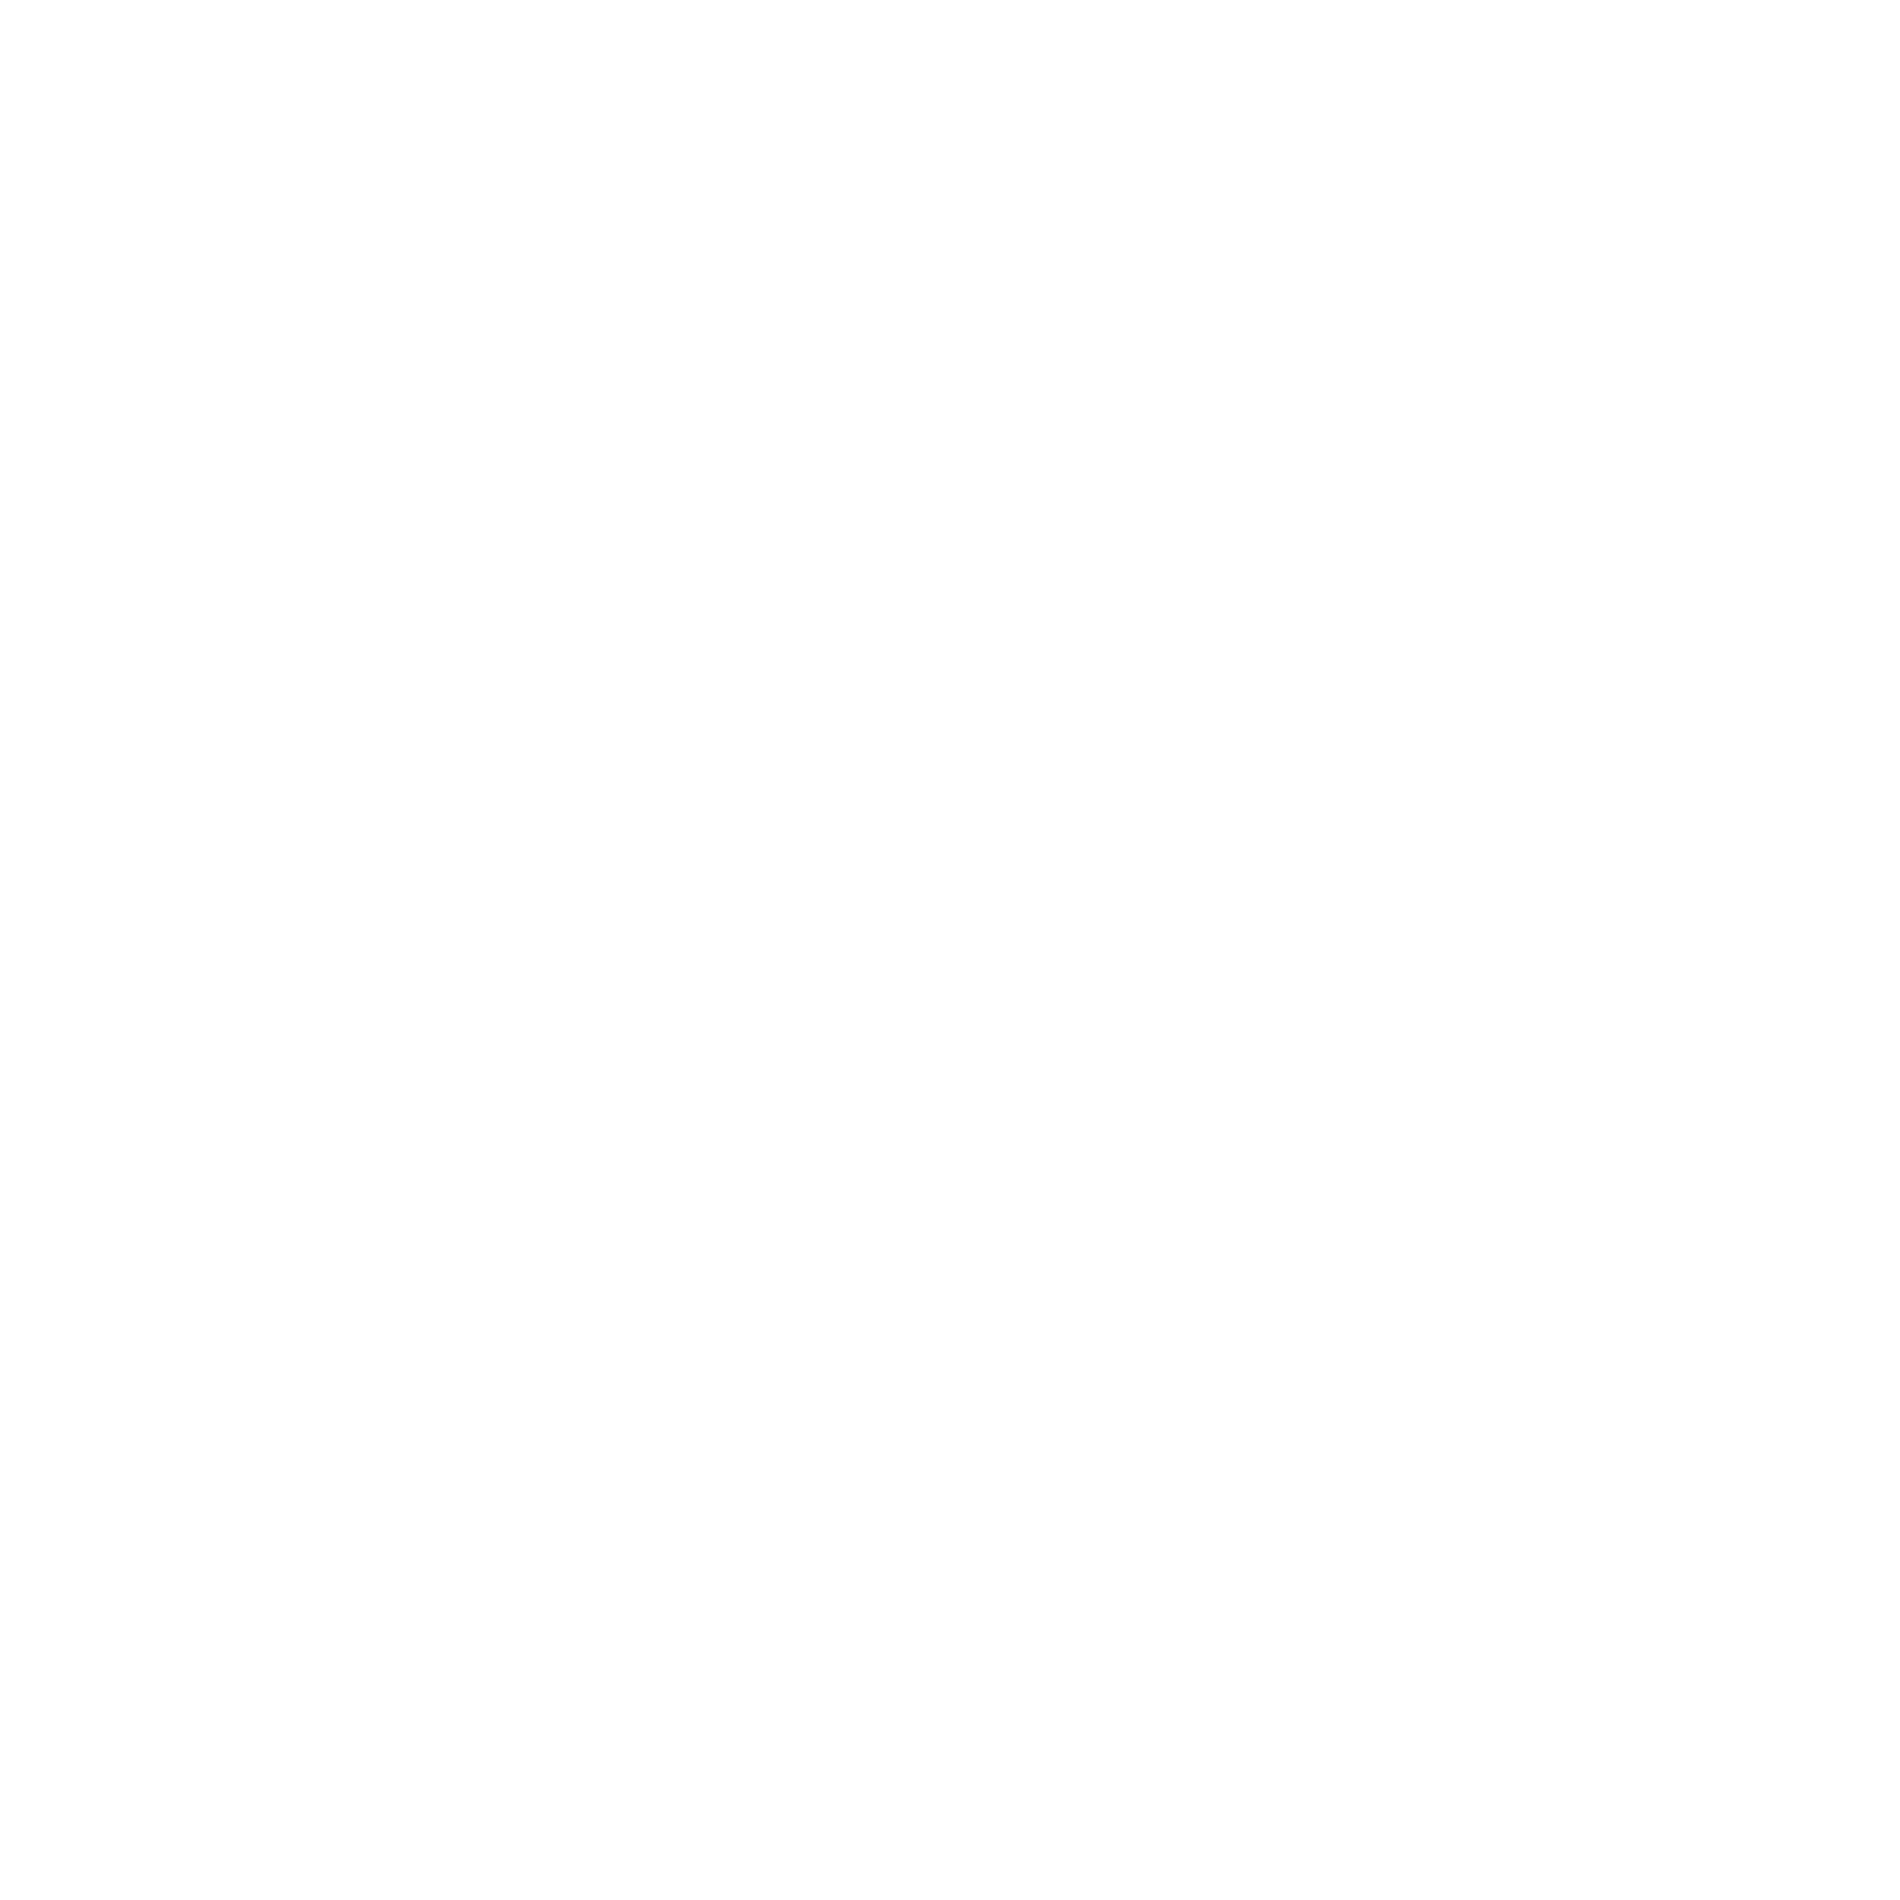 Logotipo da Canva